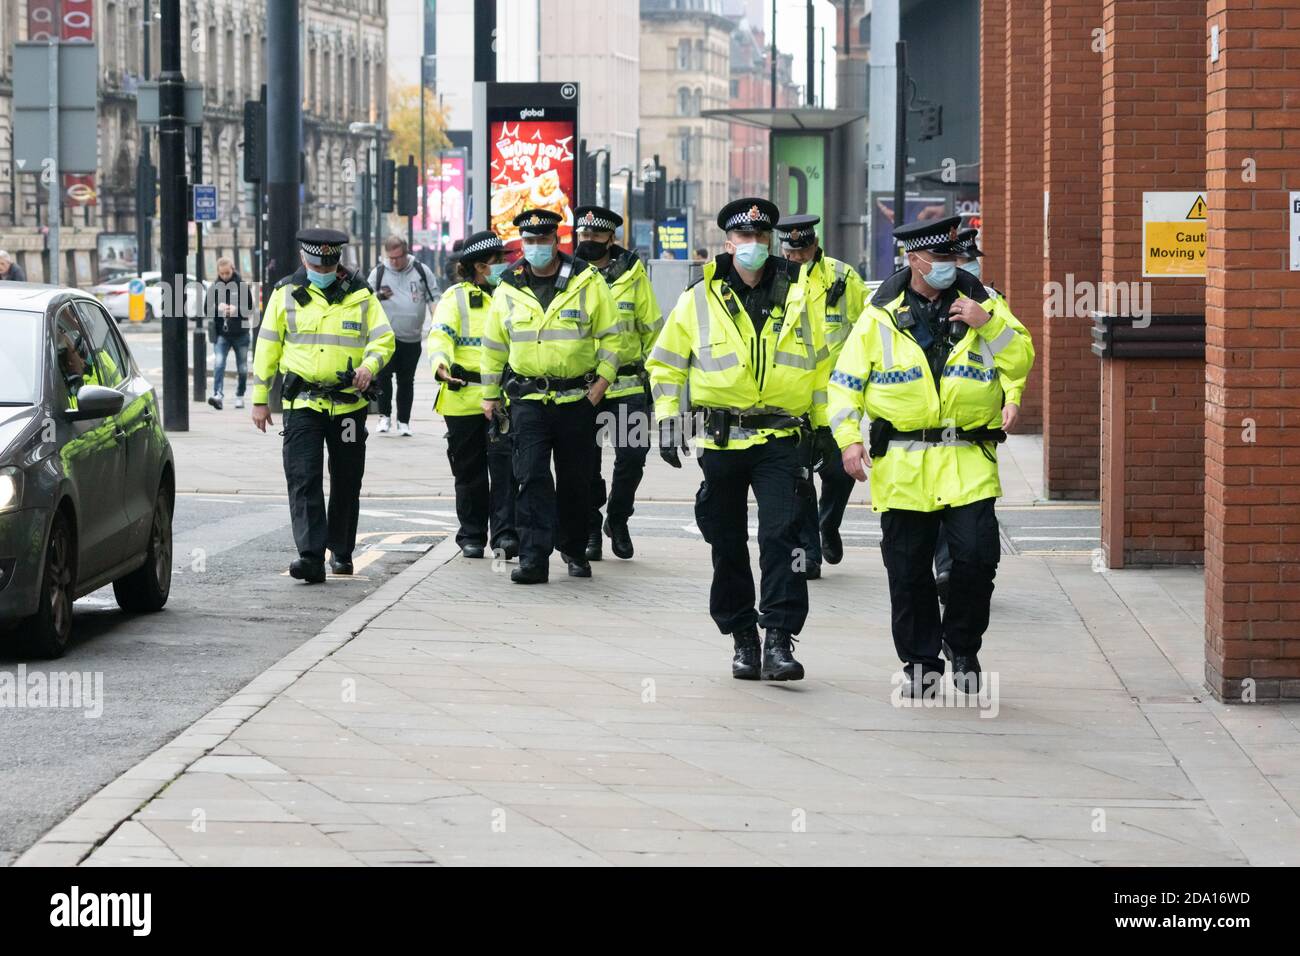 Les policiers portant des masques dans les rues de Manchester 08-11-2020 8 novembre 2020 lors des manifestations anti-verrouillage le dimanche souvenir. Banque D'Images